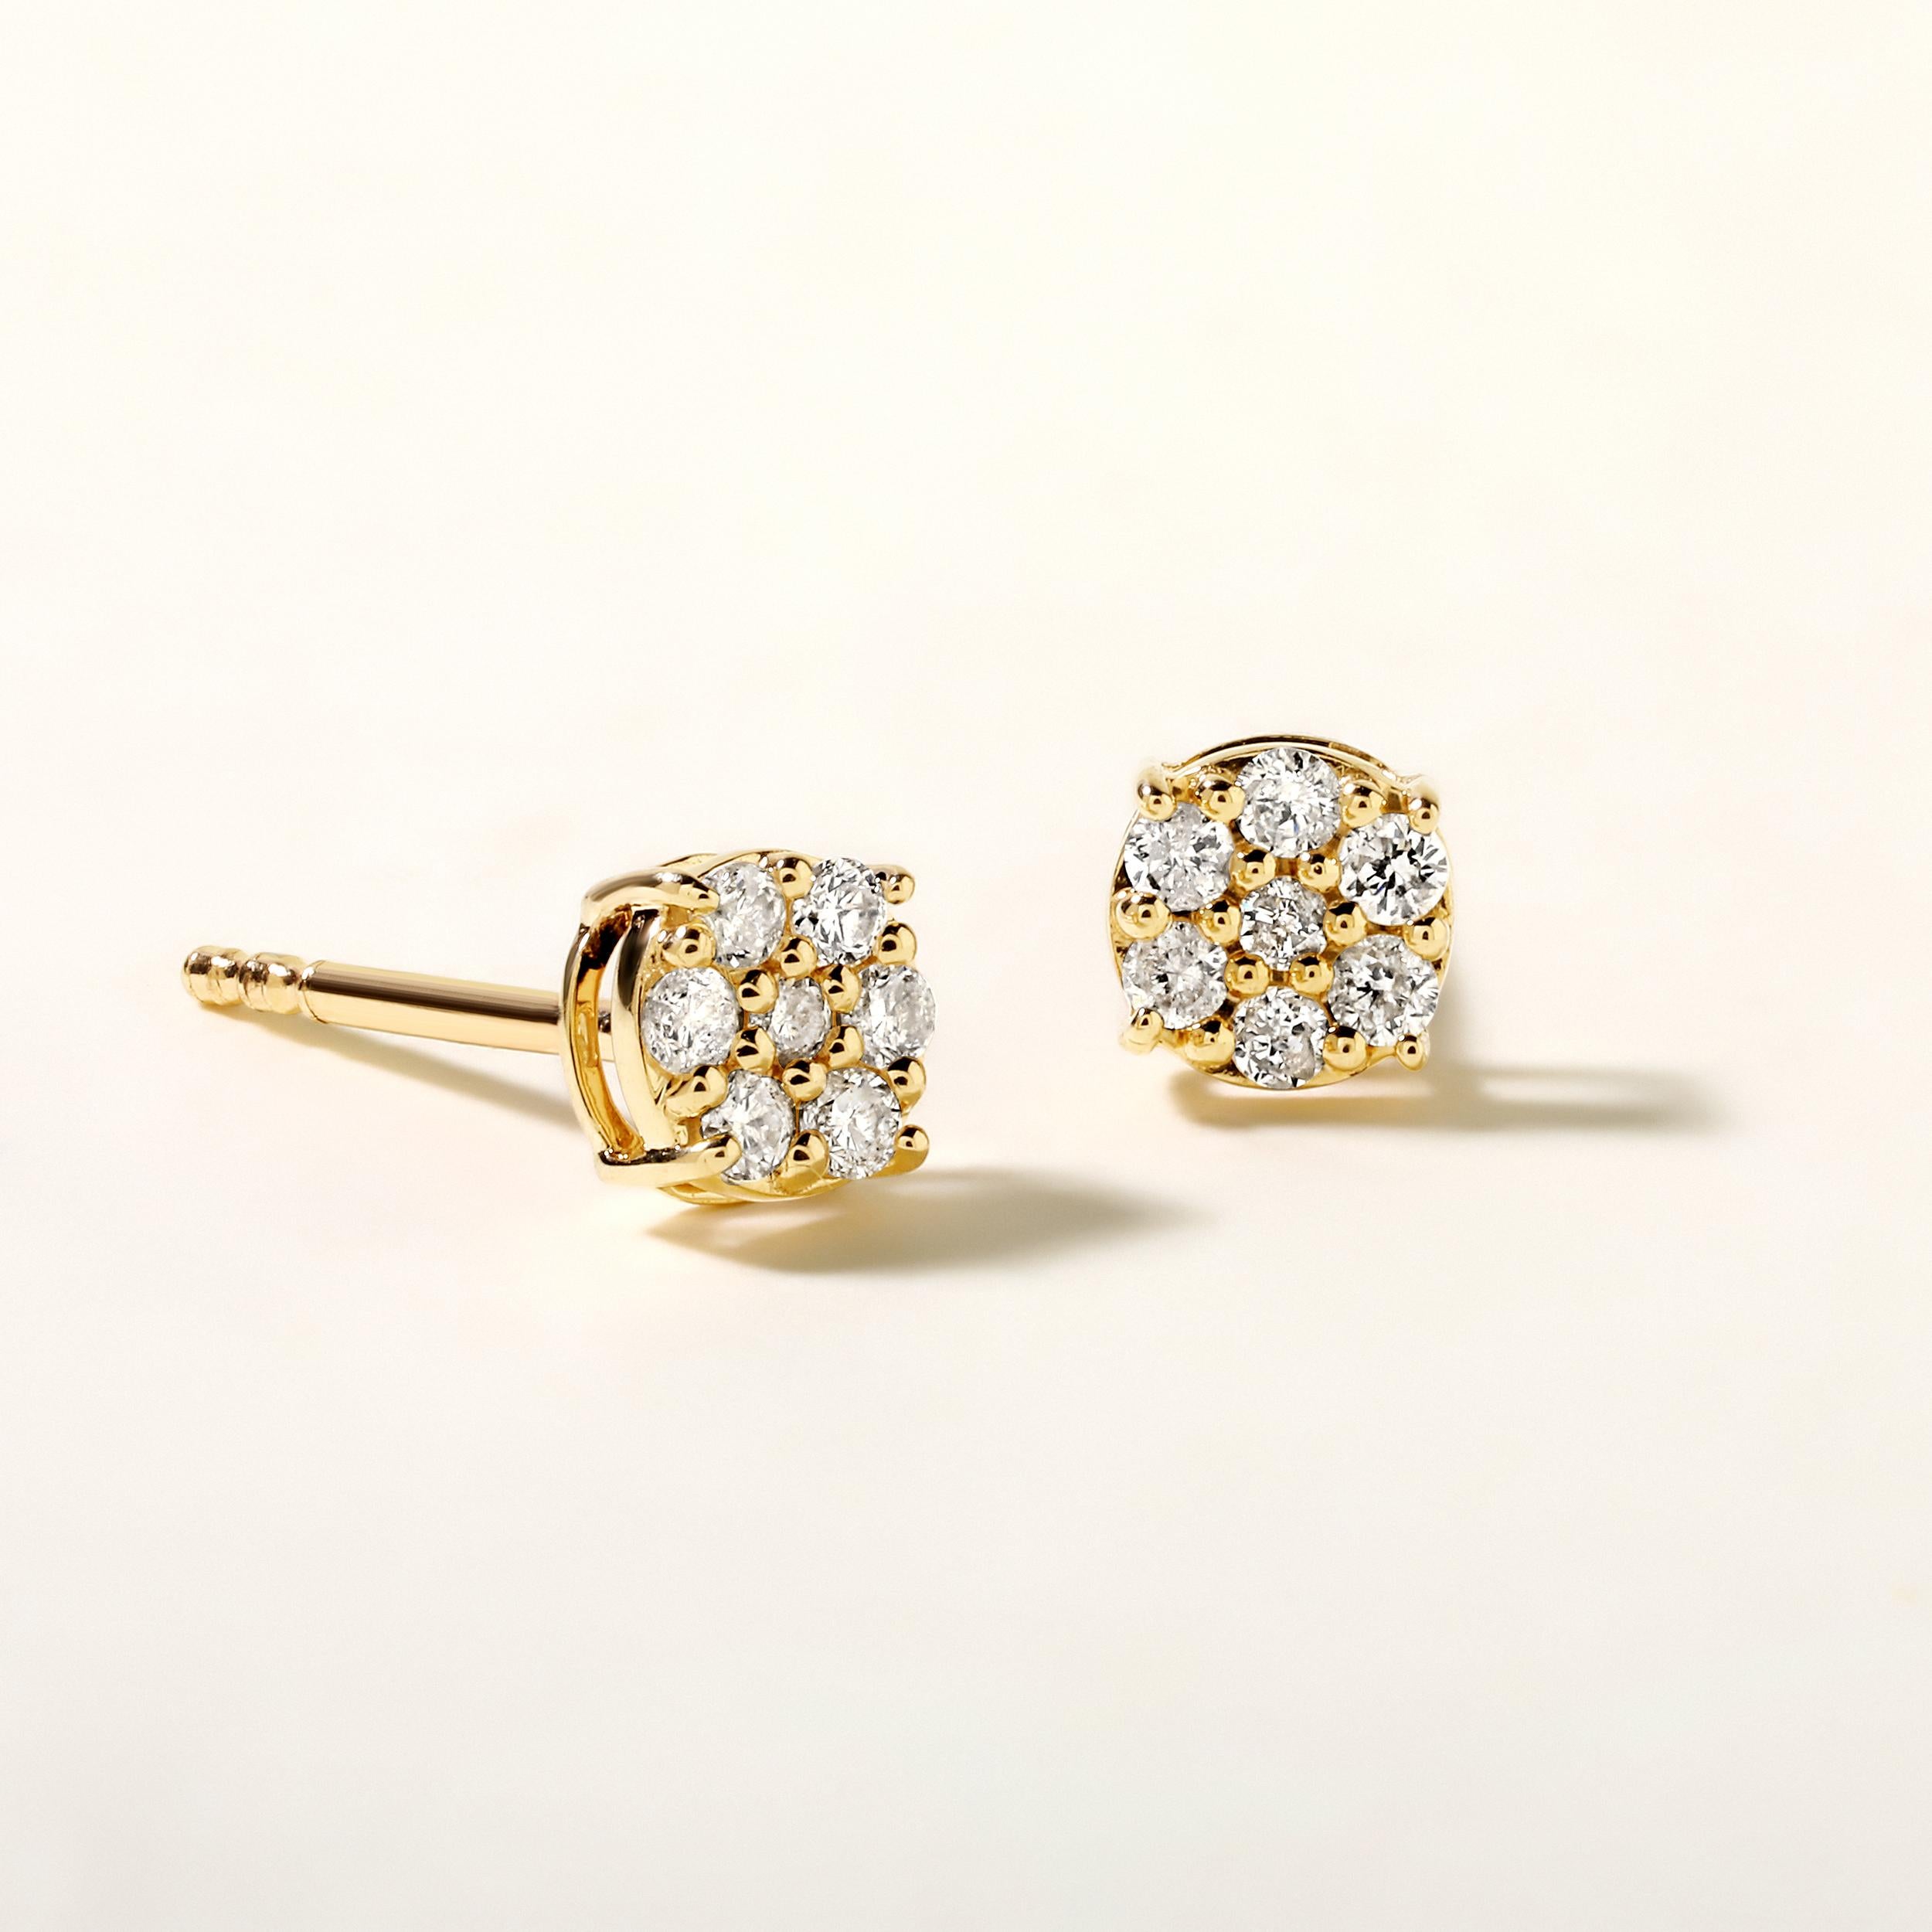 Gefertigt aus 0,87 Gramm 14K Gelbgold, enthalten die Ohrringe 14 runde Diamanten mit insgesamt 0,18 Karat in der Farbe F-G und der Reinheit I1-I2.

ZEITGENÖSSISCHE UND ZEITLOSE ESSENZ: Gefertigt aus 14 Karat/18 Karat mit 100% natürlichen Diamanten